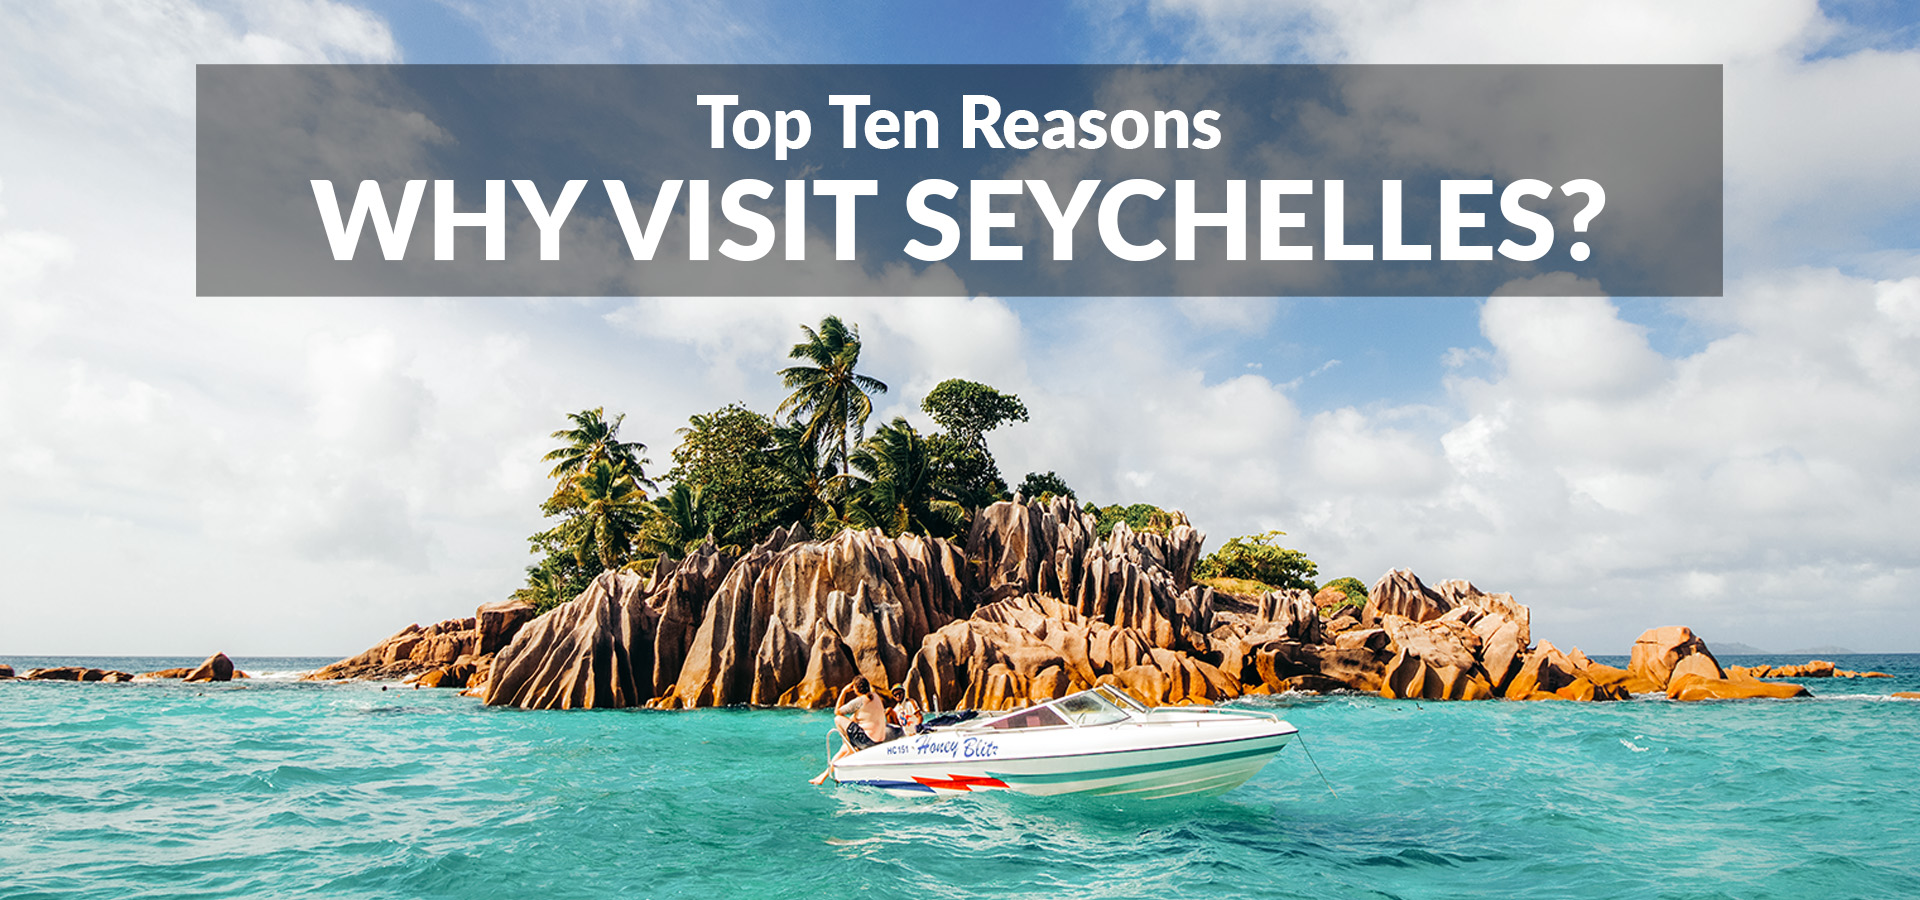 Why visit Seychelles - Top Ten Reasons